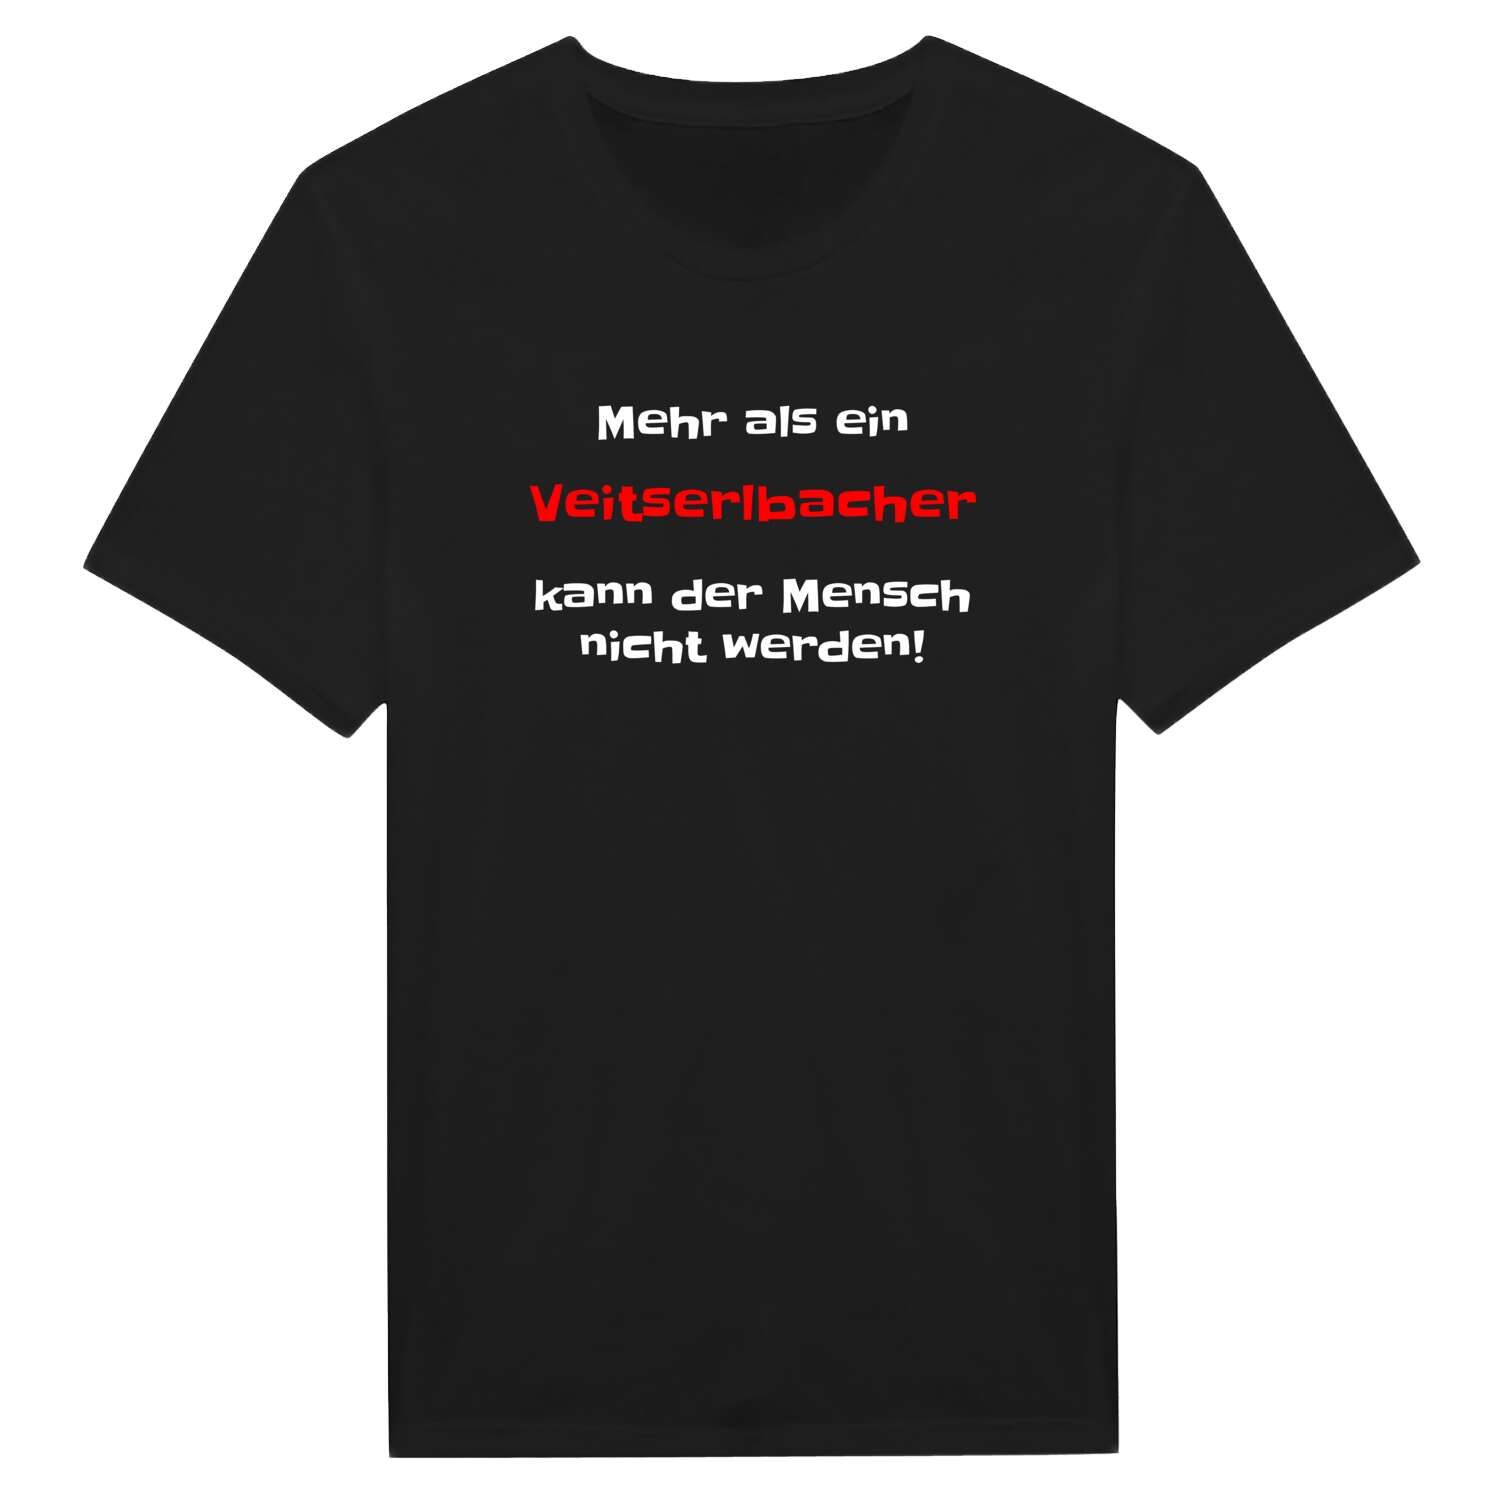 Veitserlbach T-Shirt »Mehr als ein«